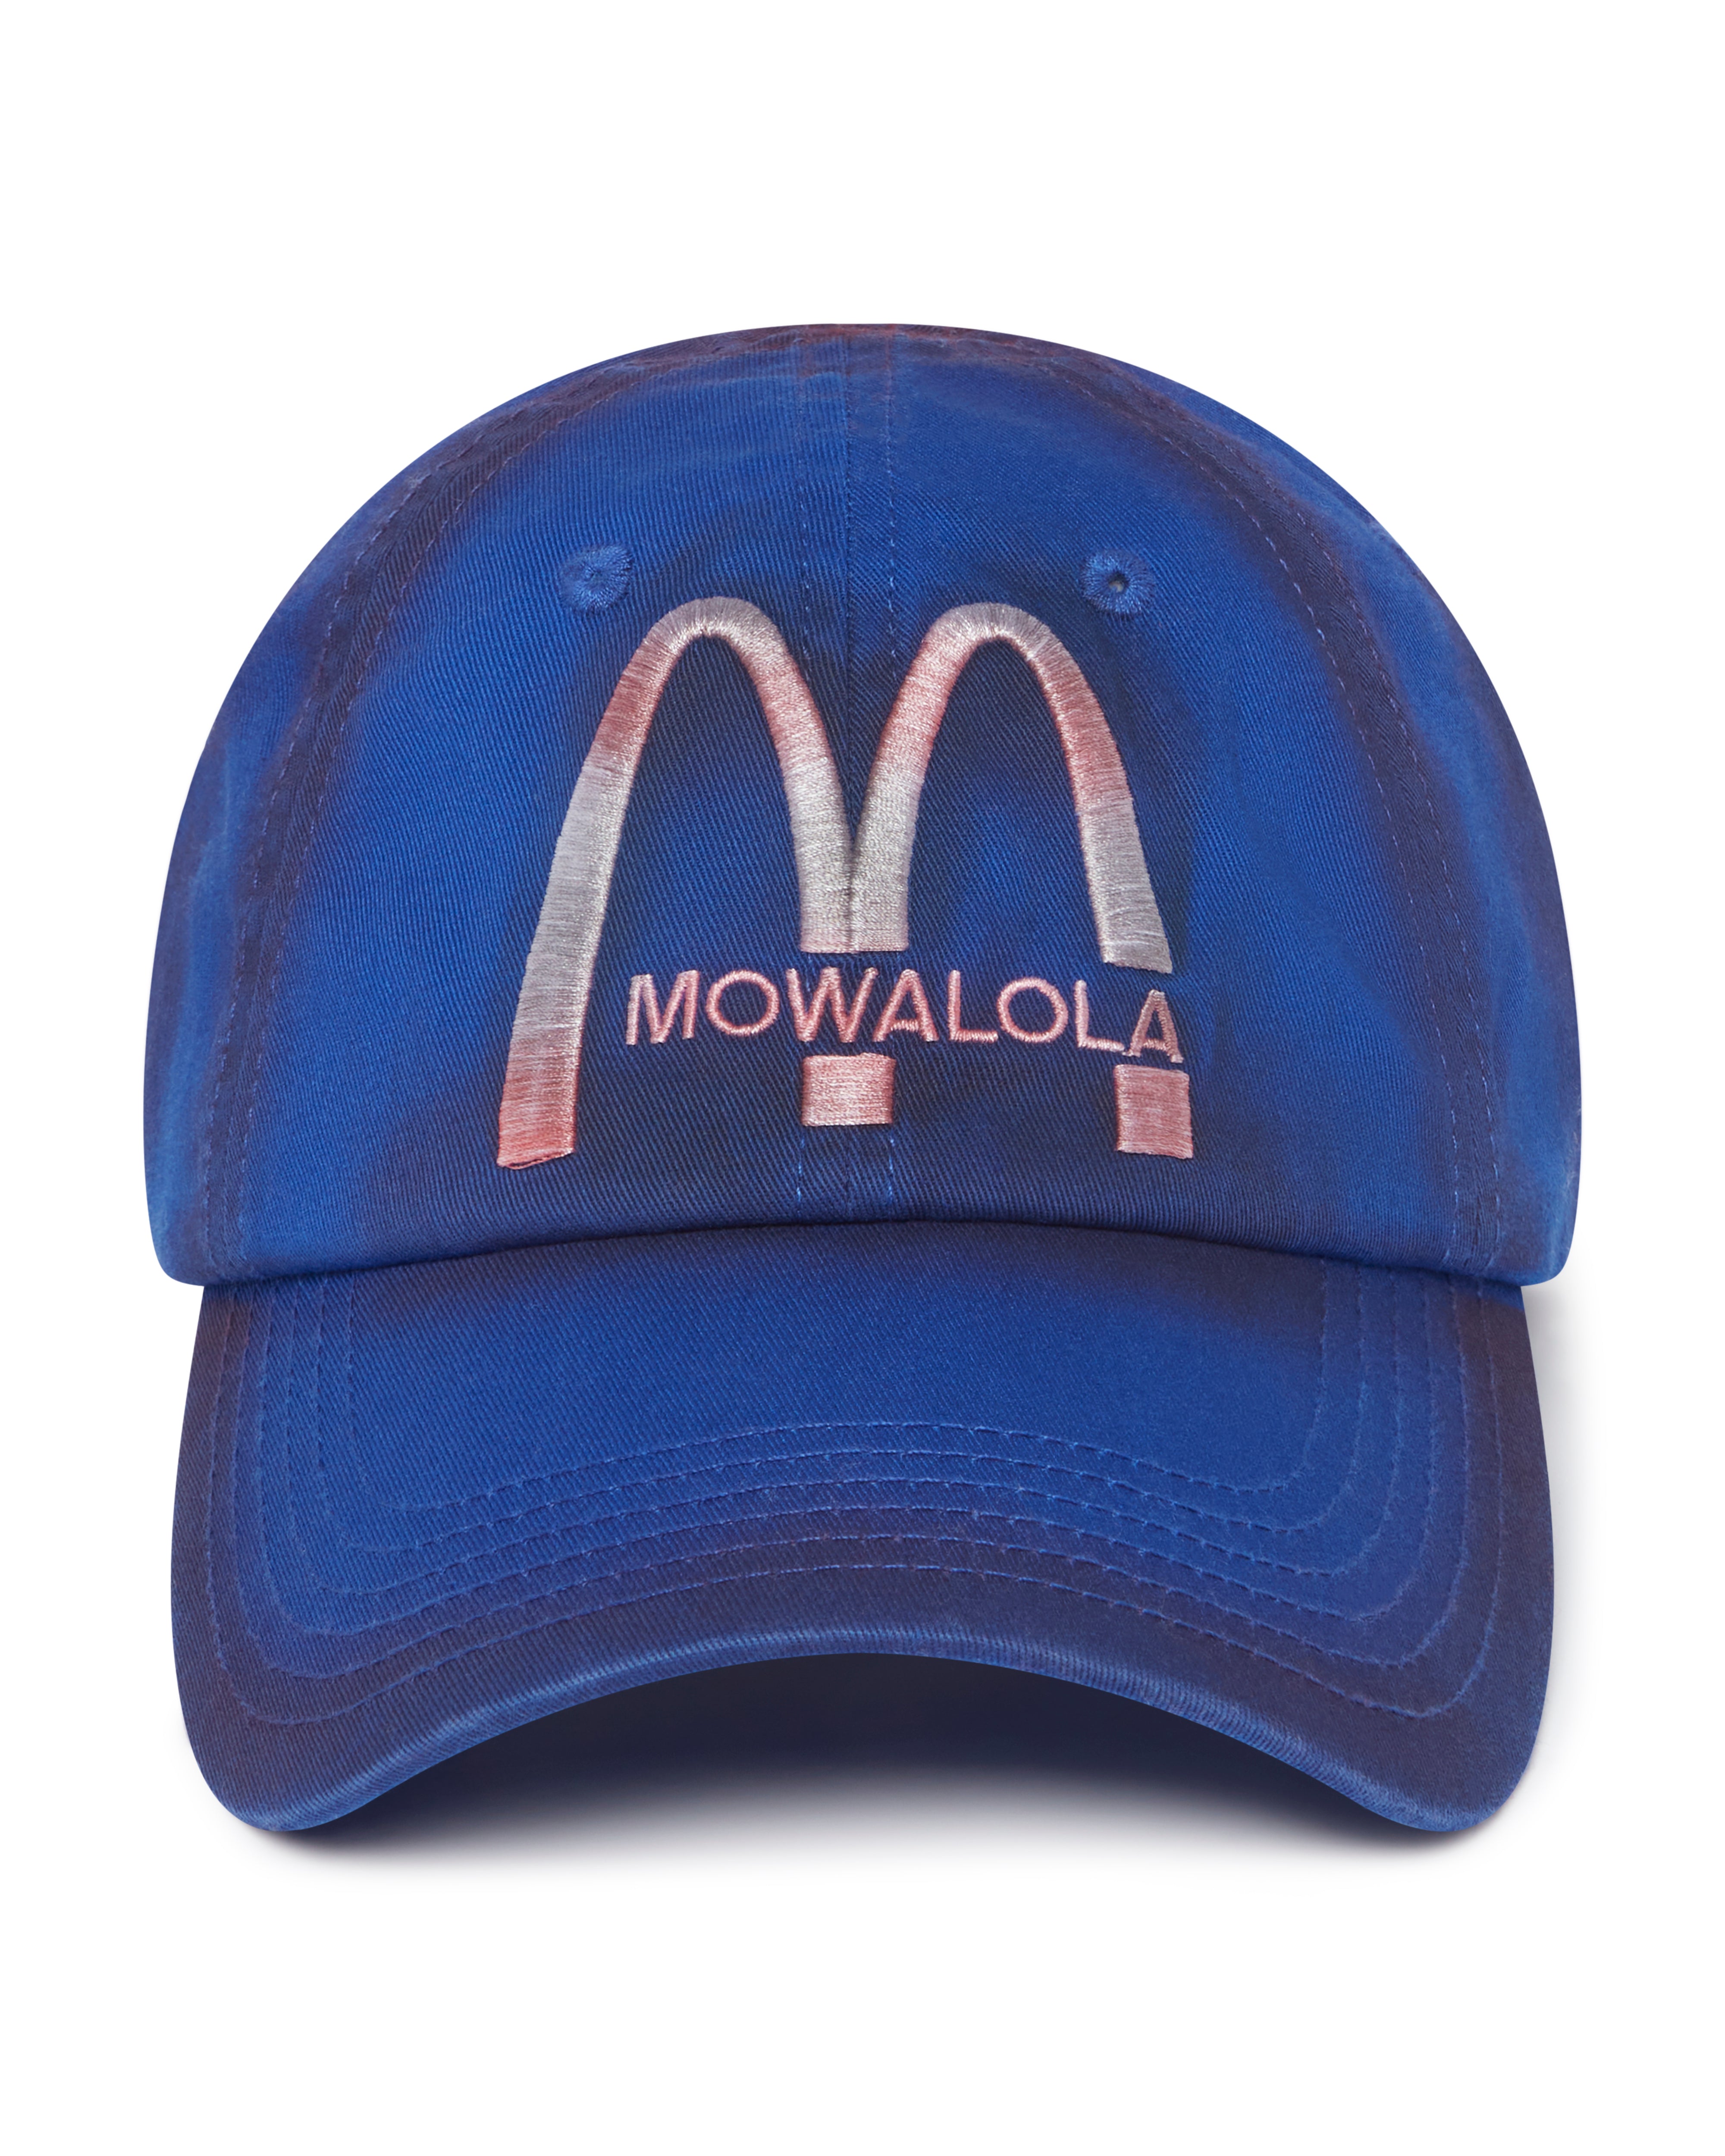 大莫瓦帽子– MOWALOLA